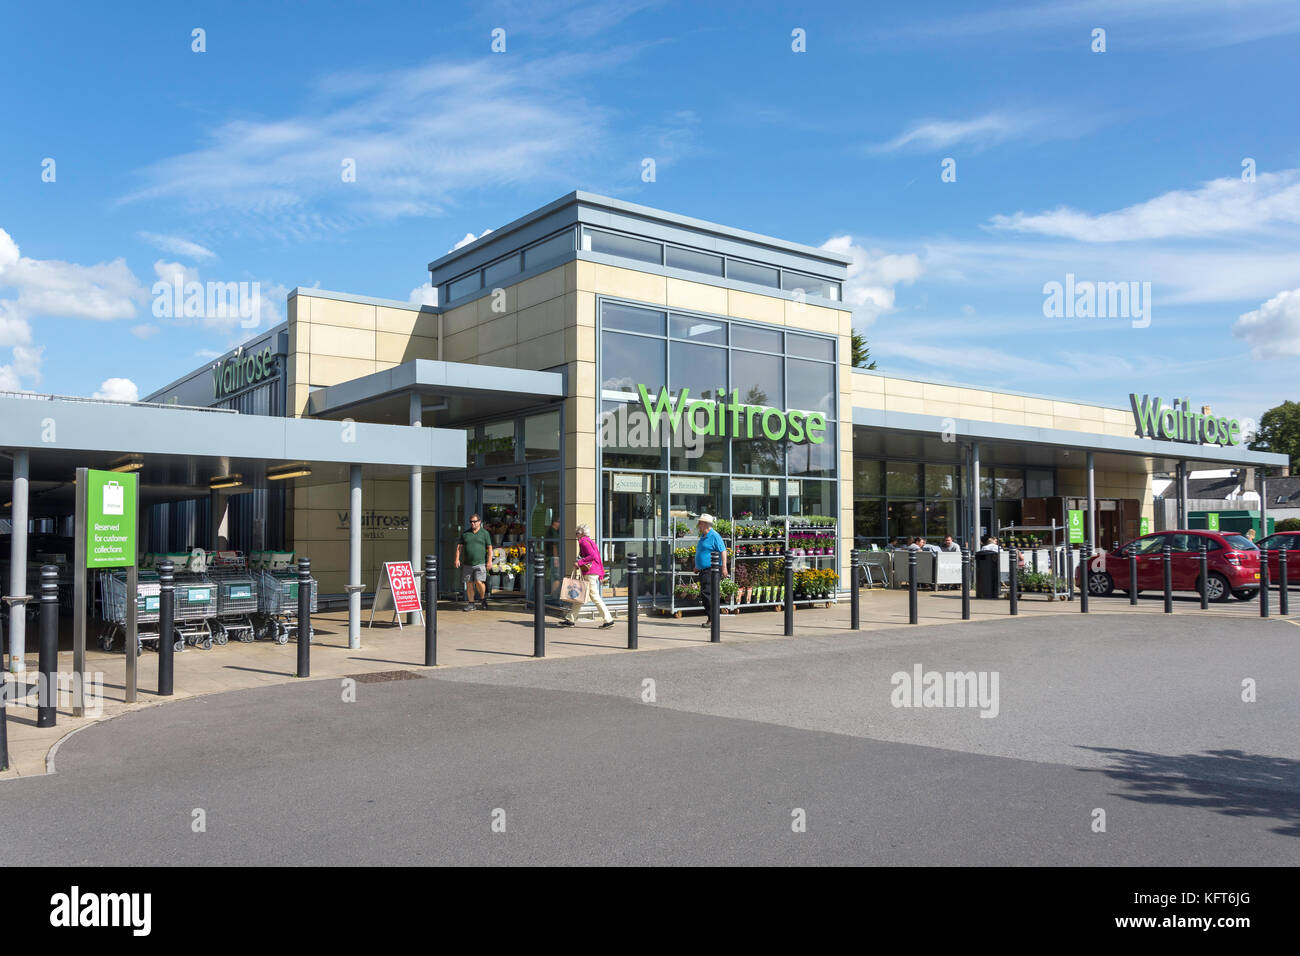 Waitrose Supermarket, Whiting Way, Wells, Somerset, England, United Kingdom Stock Photo